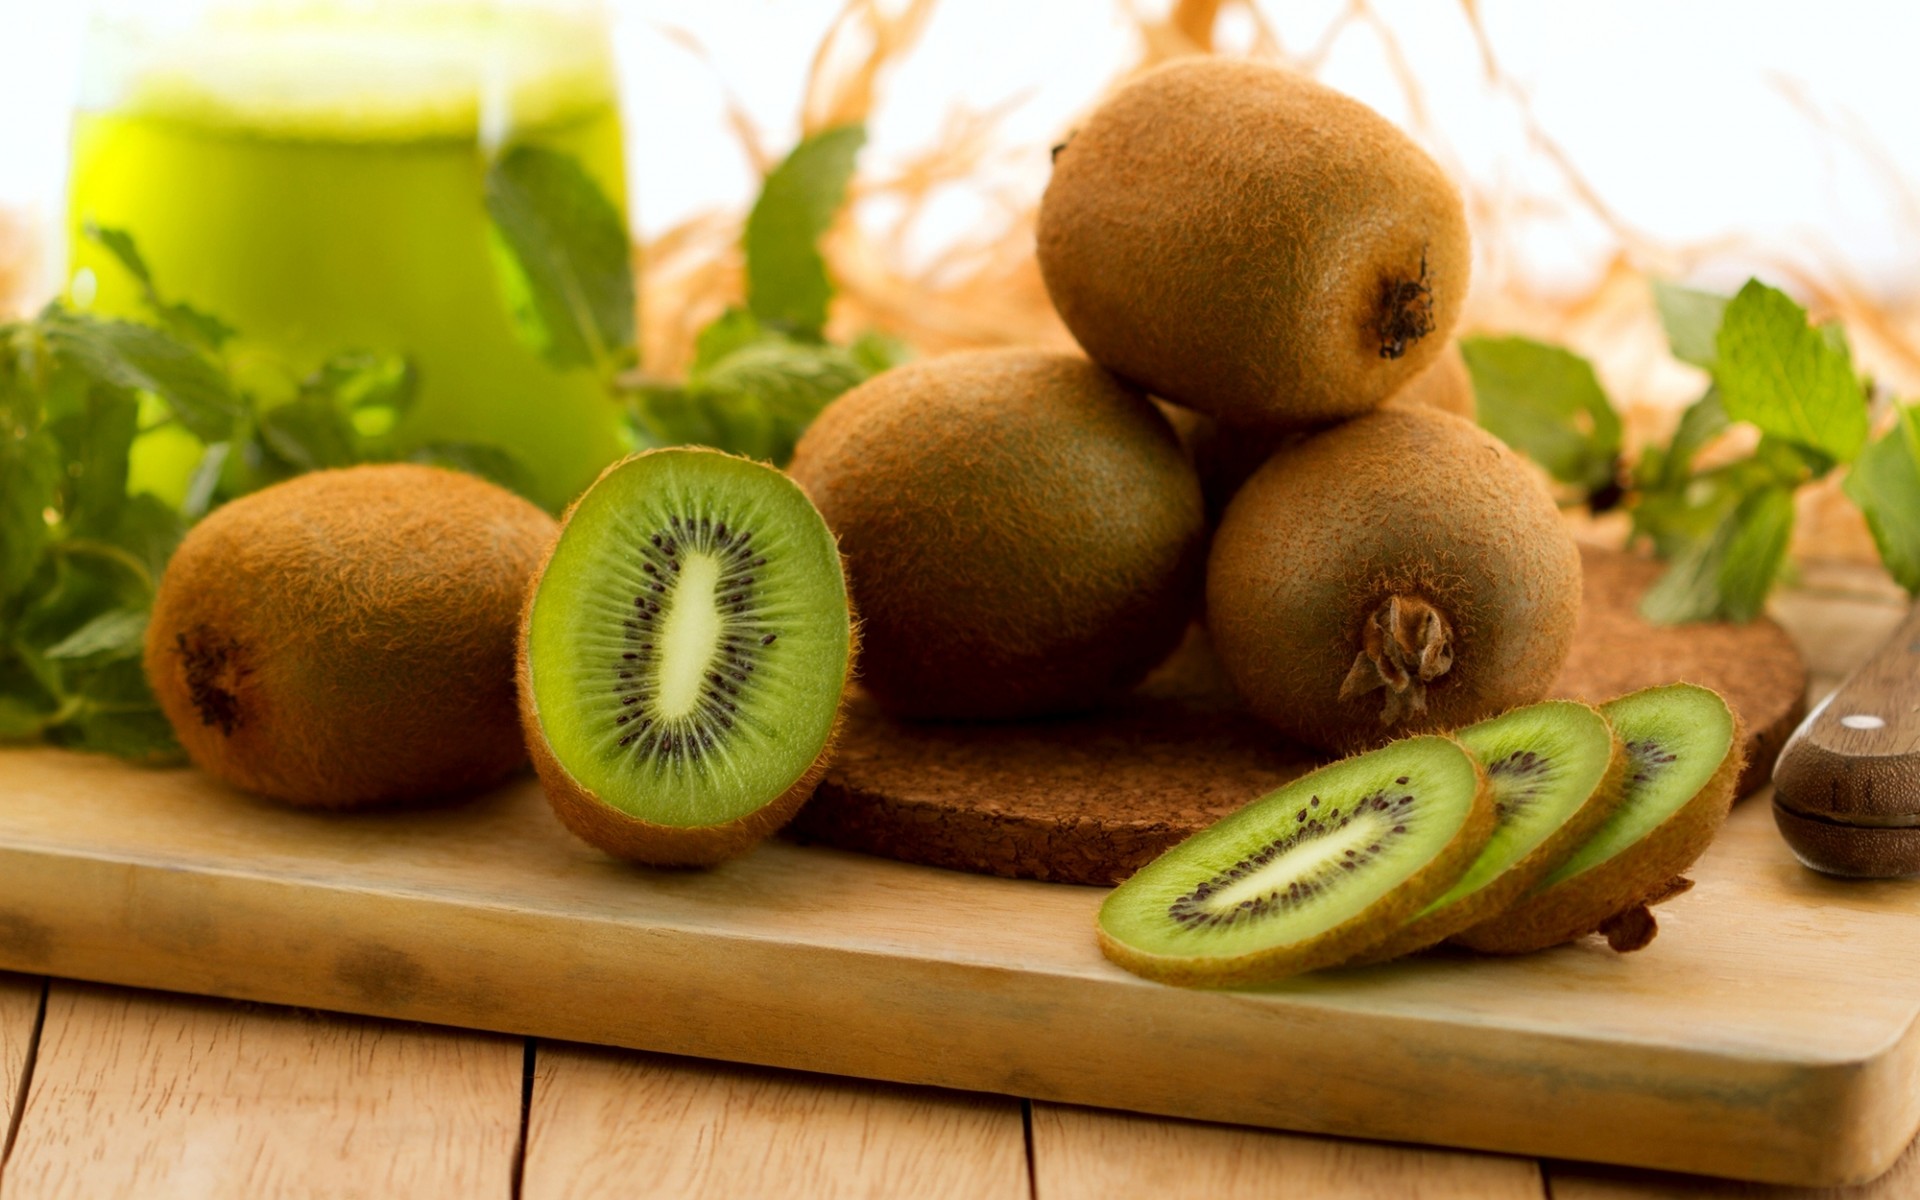 Quả kiwi cung cấp rất nhiều chất dinh dưỡng cho bà bầu và thai nhi